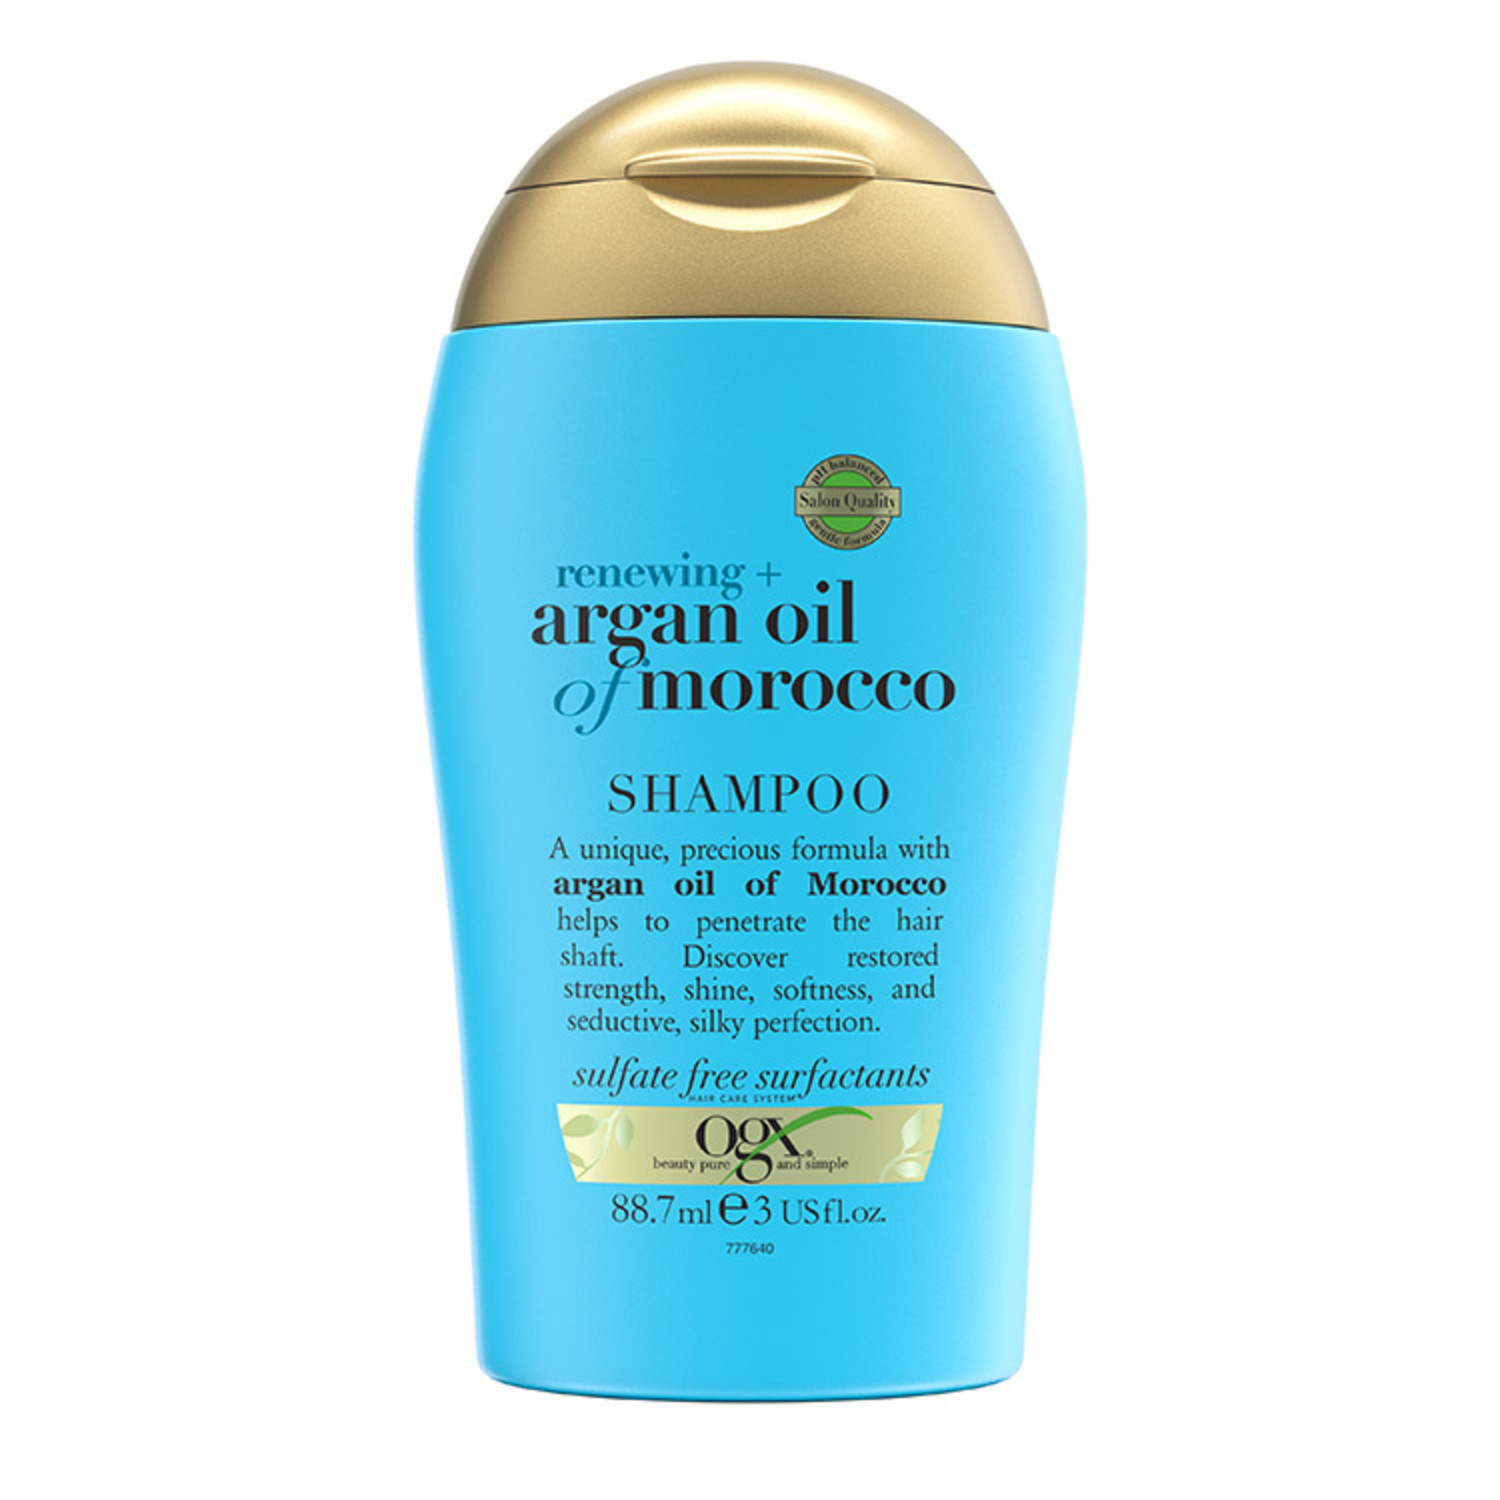 renewing argan oil of morocco szampon opinie